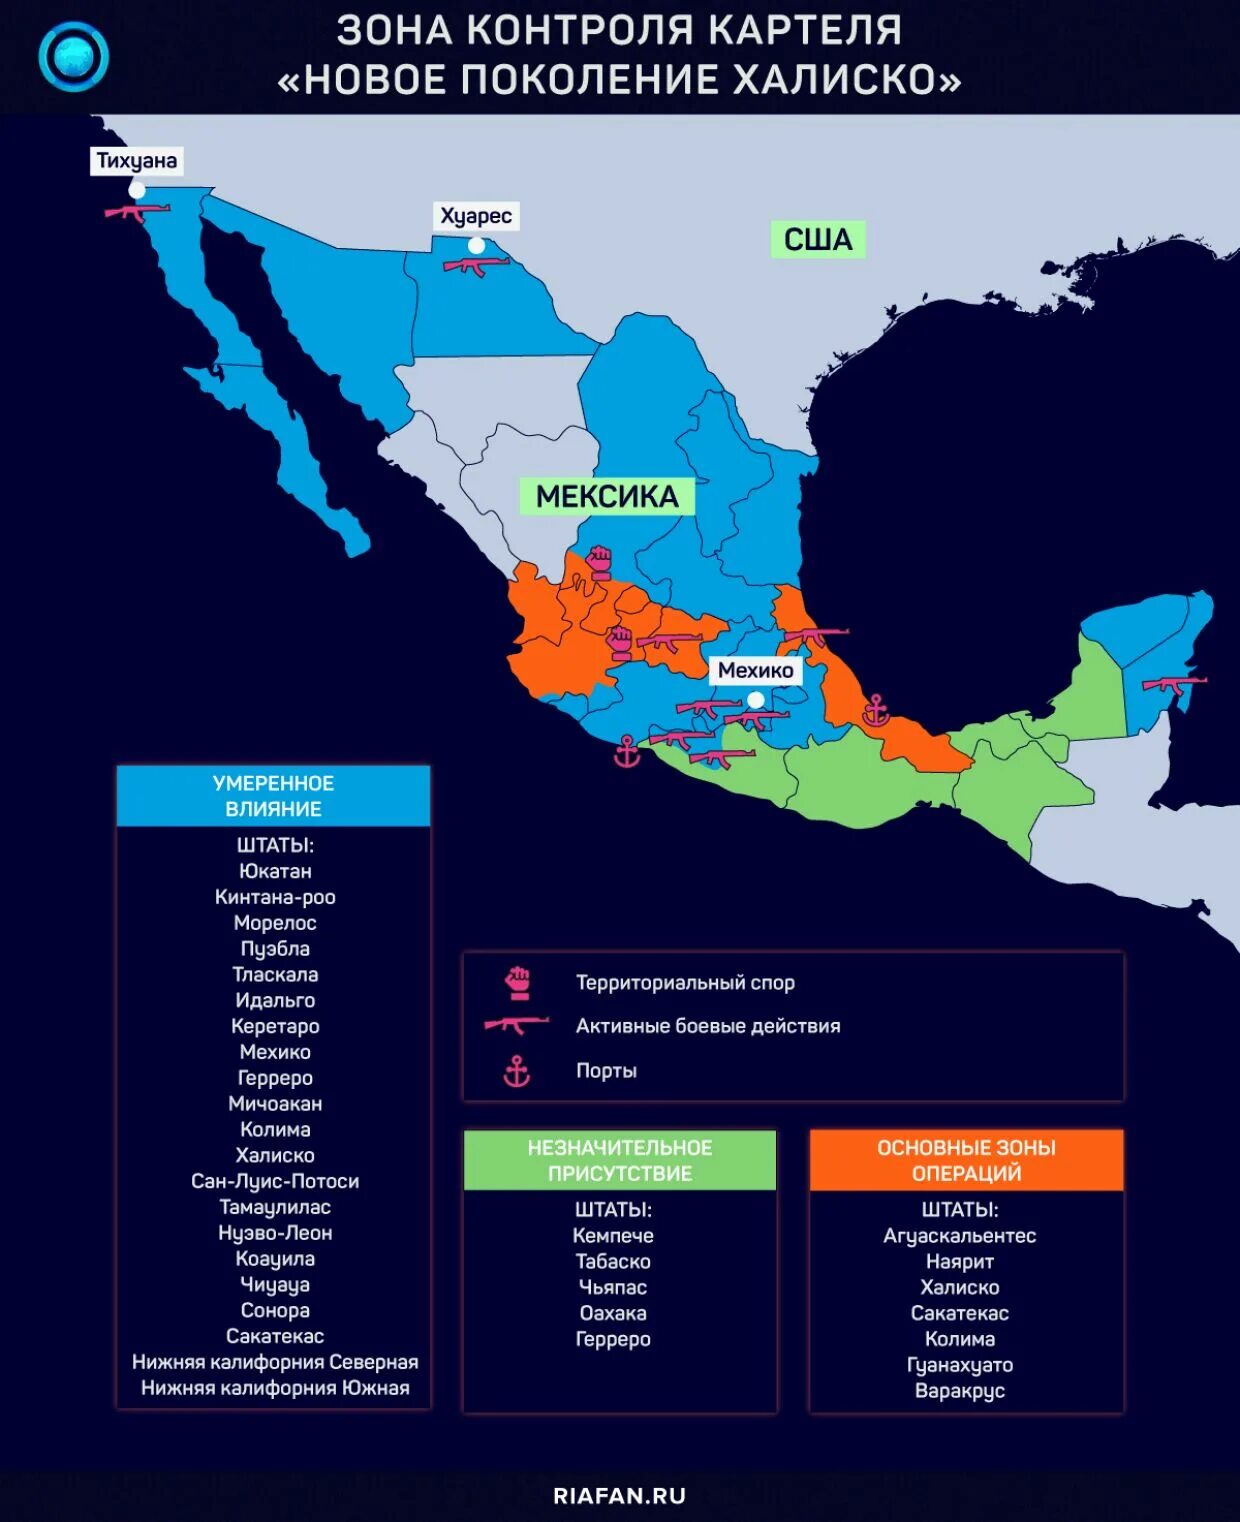 Штаты мексики. Штат Халиско Мексика. Картели Мексики карта 1990. Штат Халиско Мексика на карте. Карта мексиканских картелей 2022.